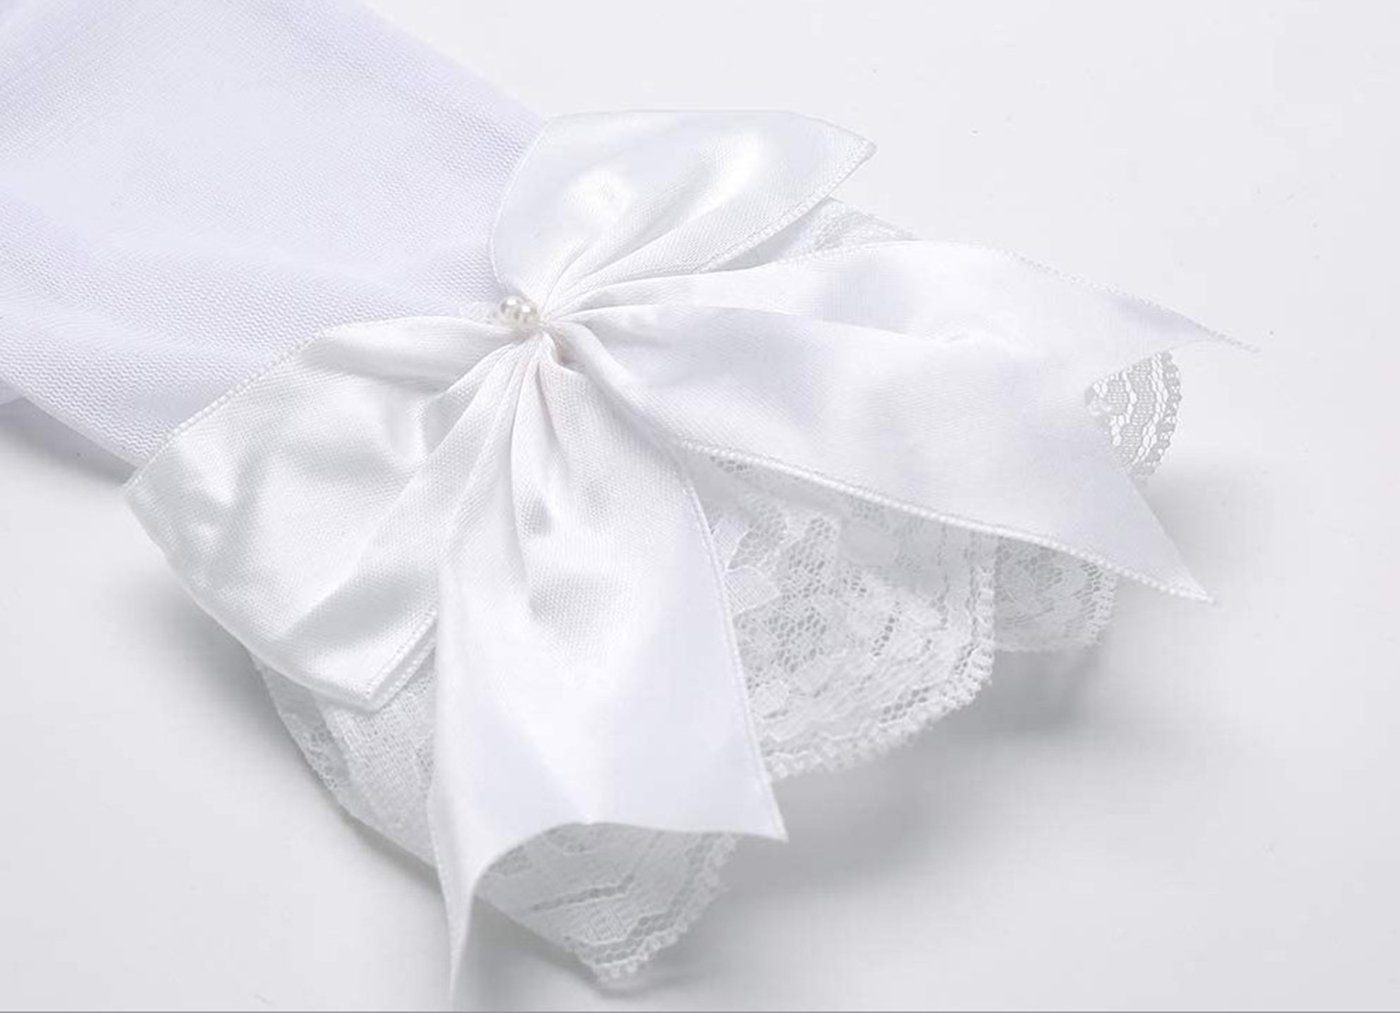 SCHUTA Abendhandschuhe Braut Kleiderhandschuhe,Schmetterlingsknotenhandschuhe Weiß Brautkleider